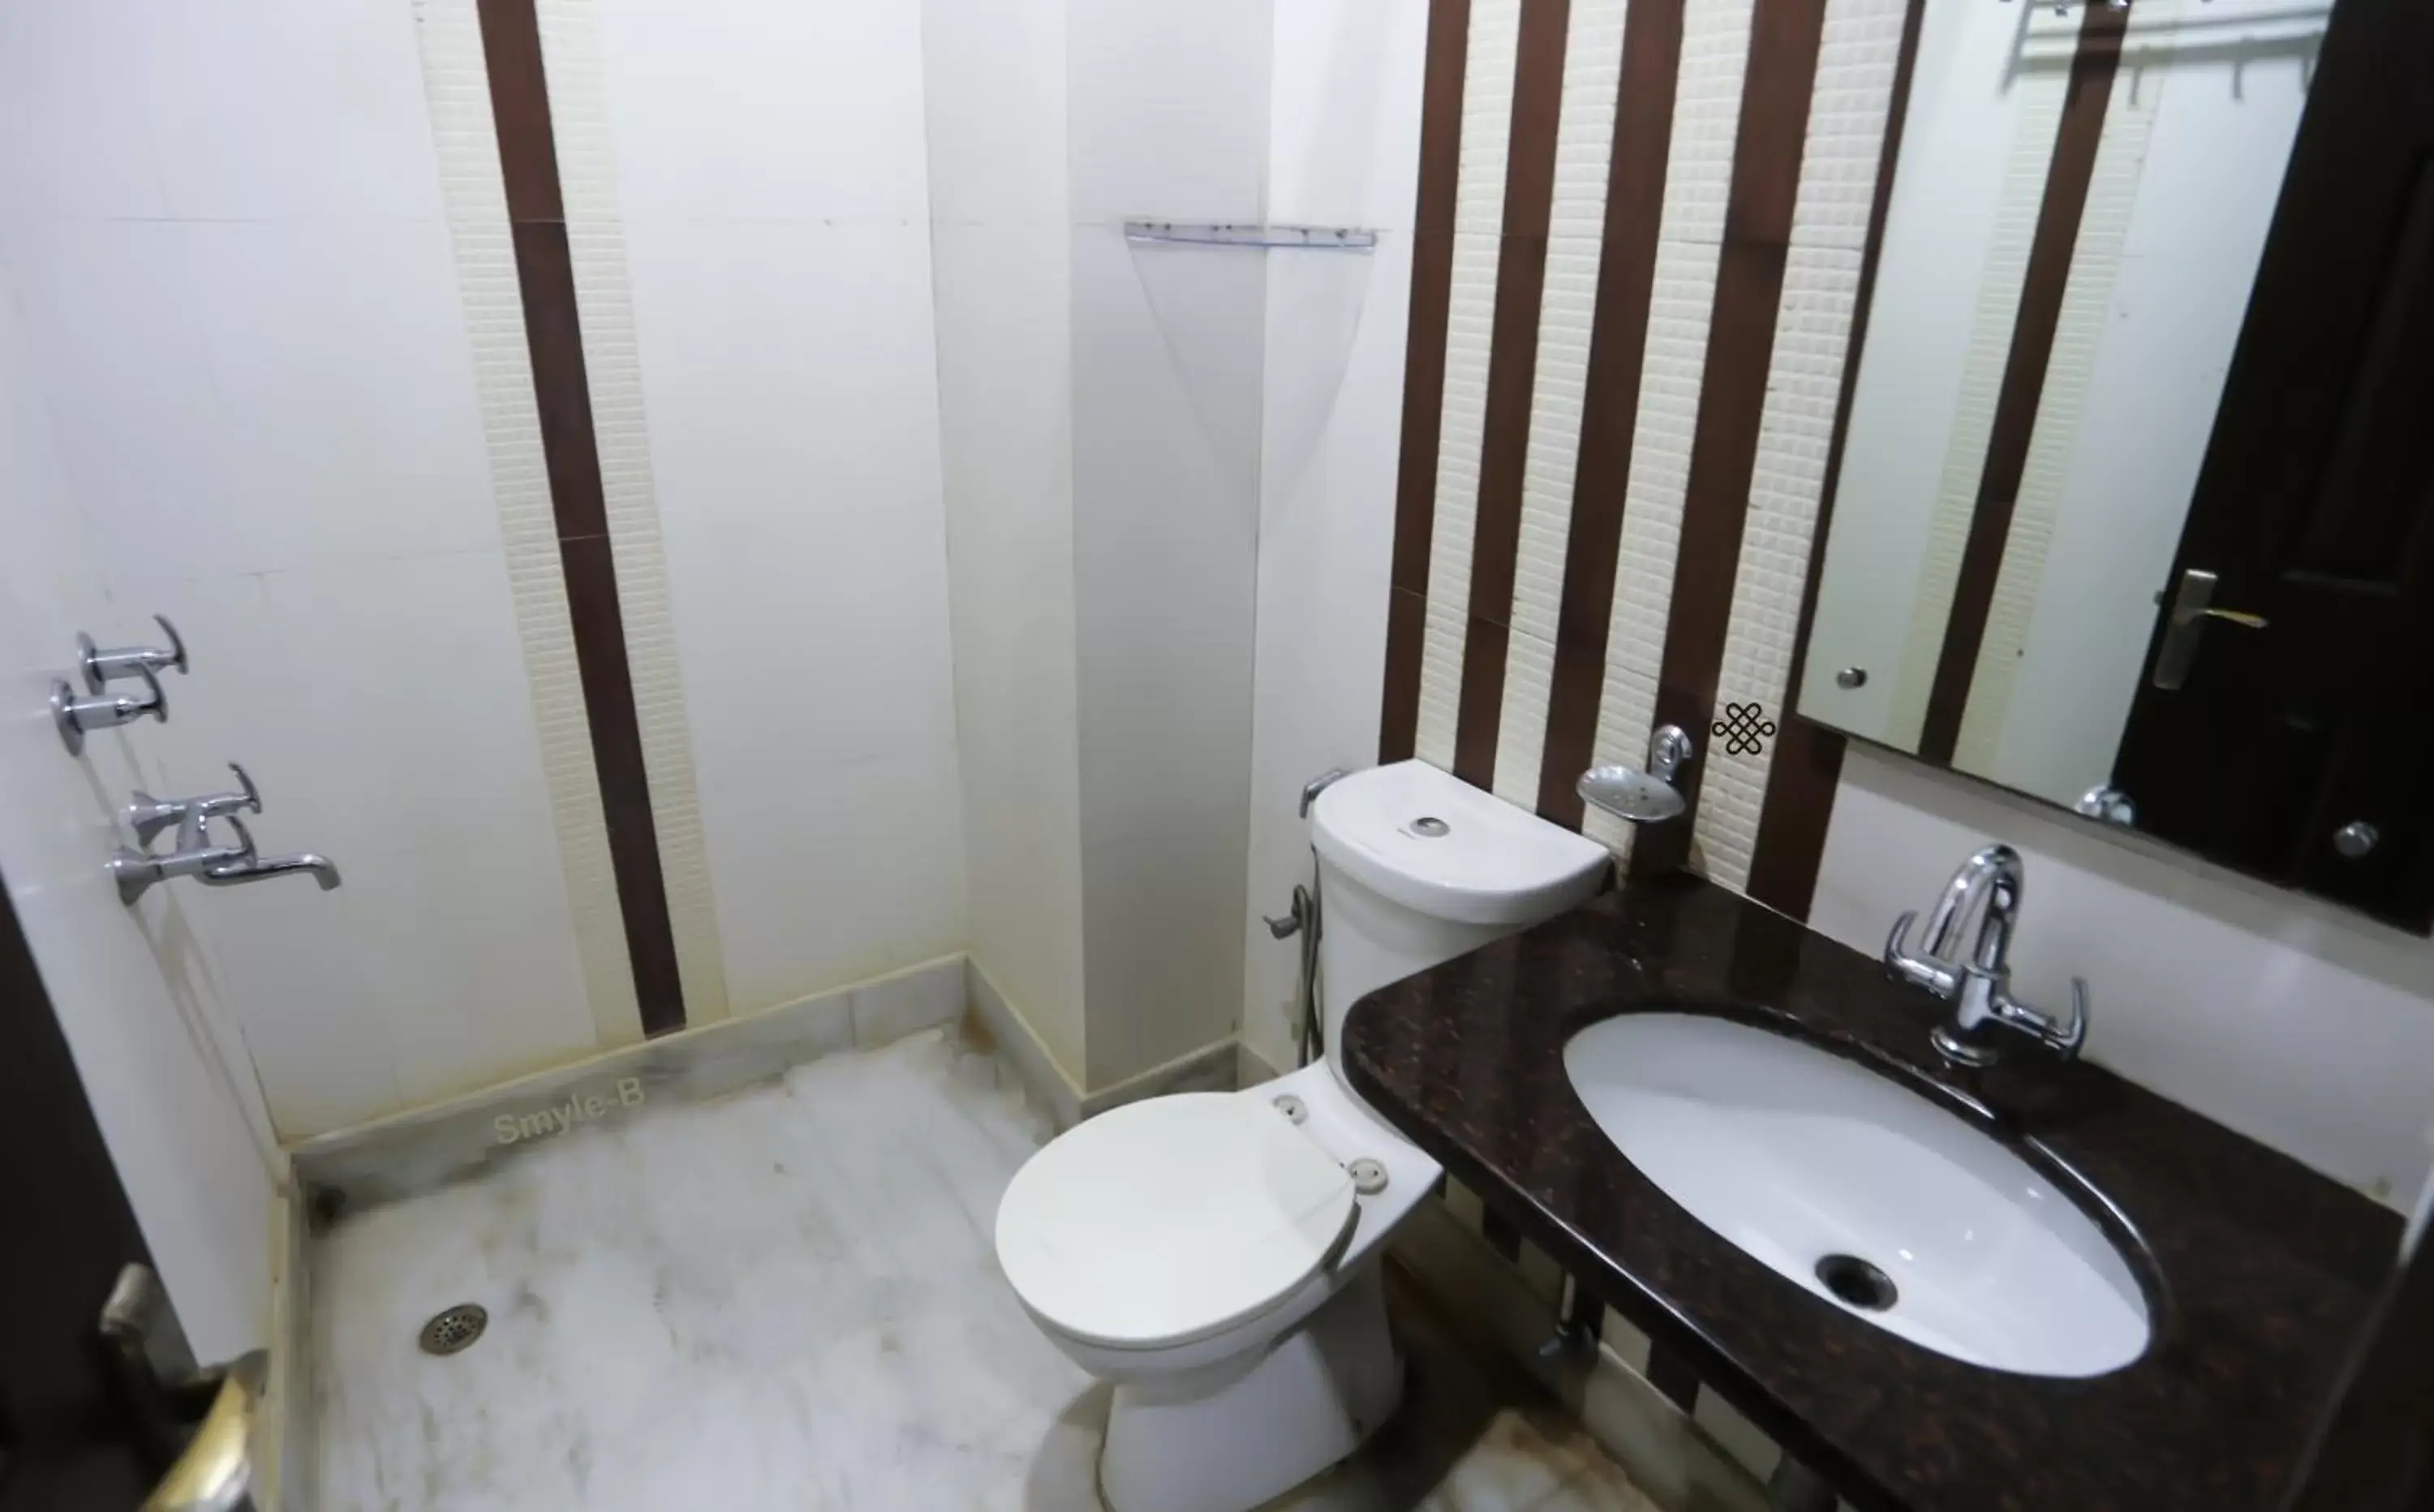 Bathroom in Smyle Inn - Best Value Hotel near New Delhi Station